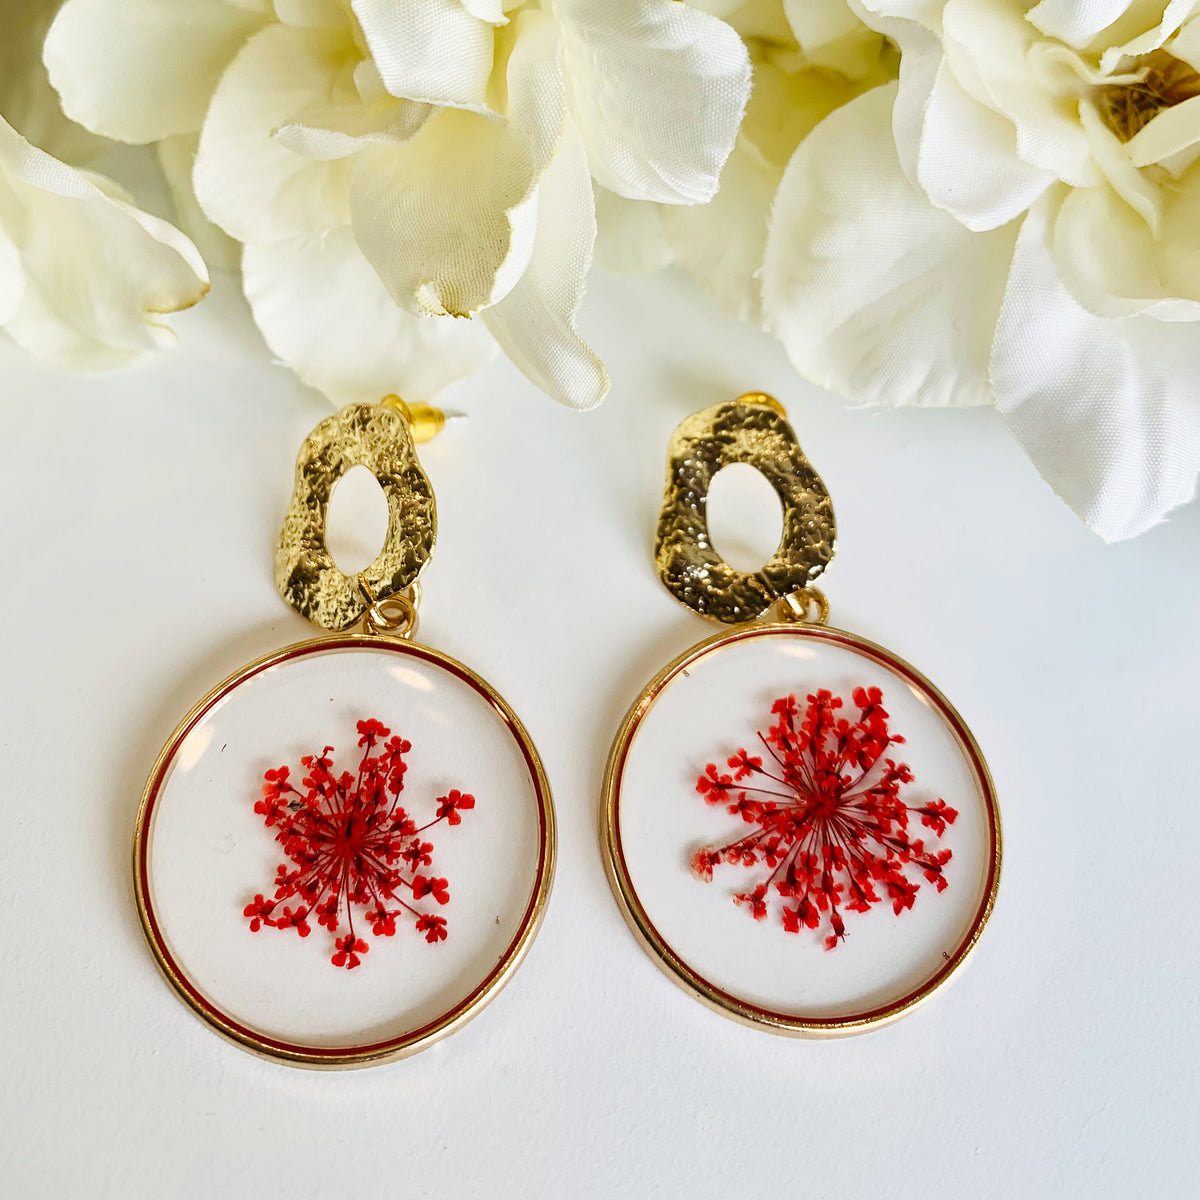 Little red flower earrings – Aegis Jewelry